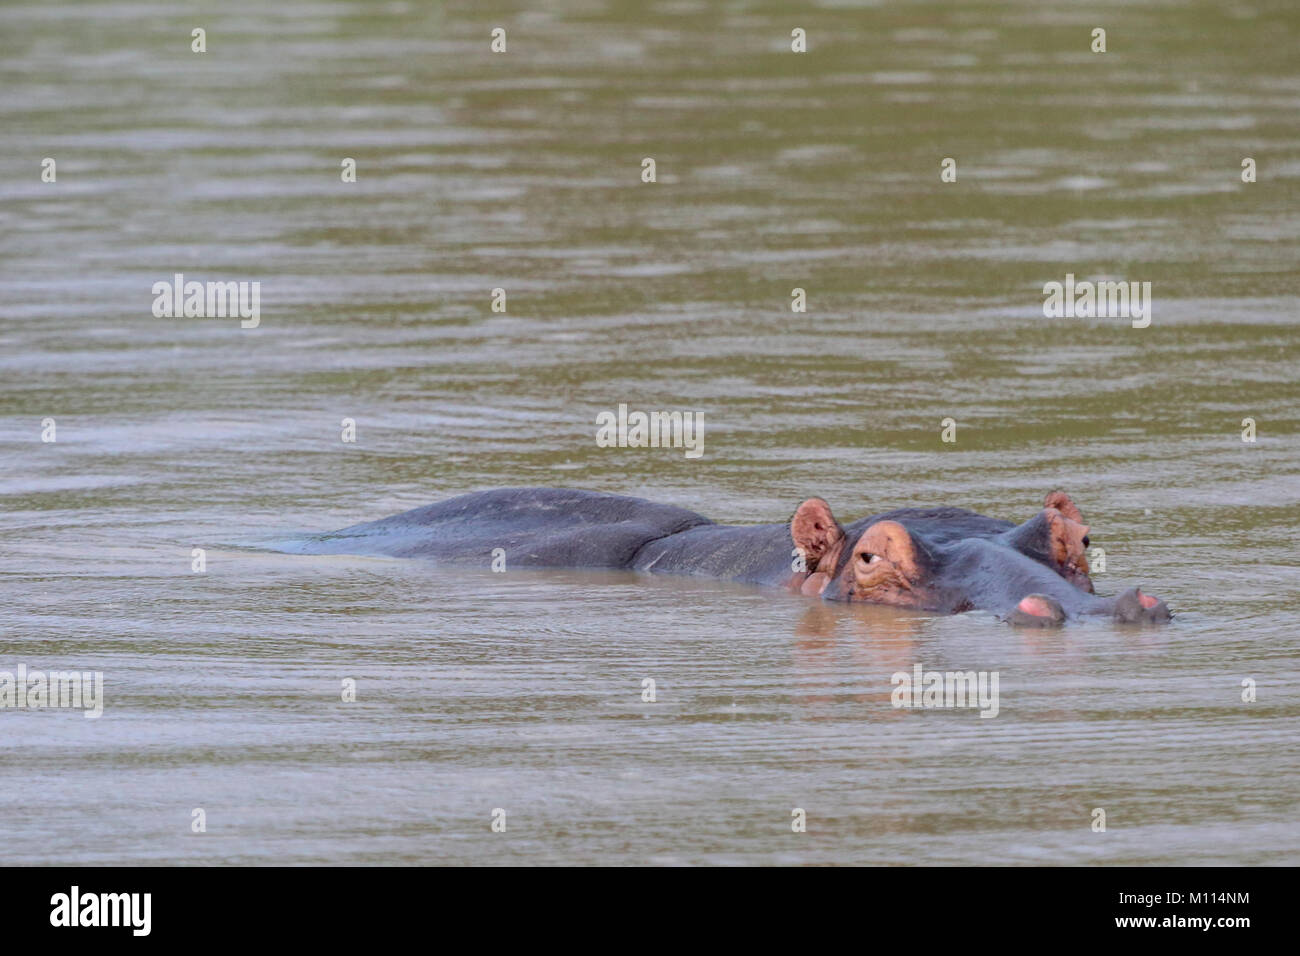 Hippo wallowing nel lago sotto la pioggia. Testa e corpo appena al di sopra dell'acqua. Foto Stock